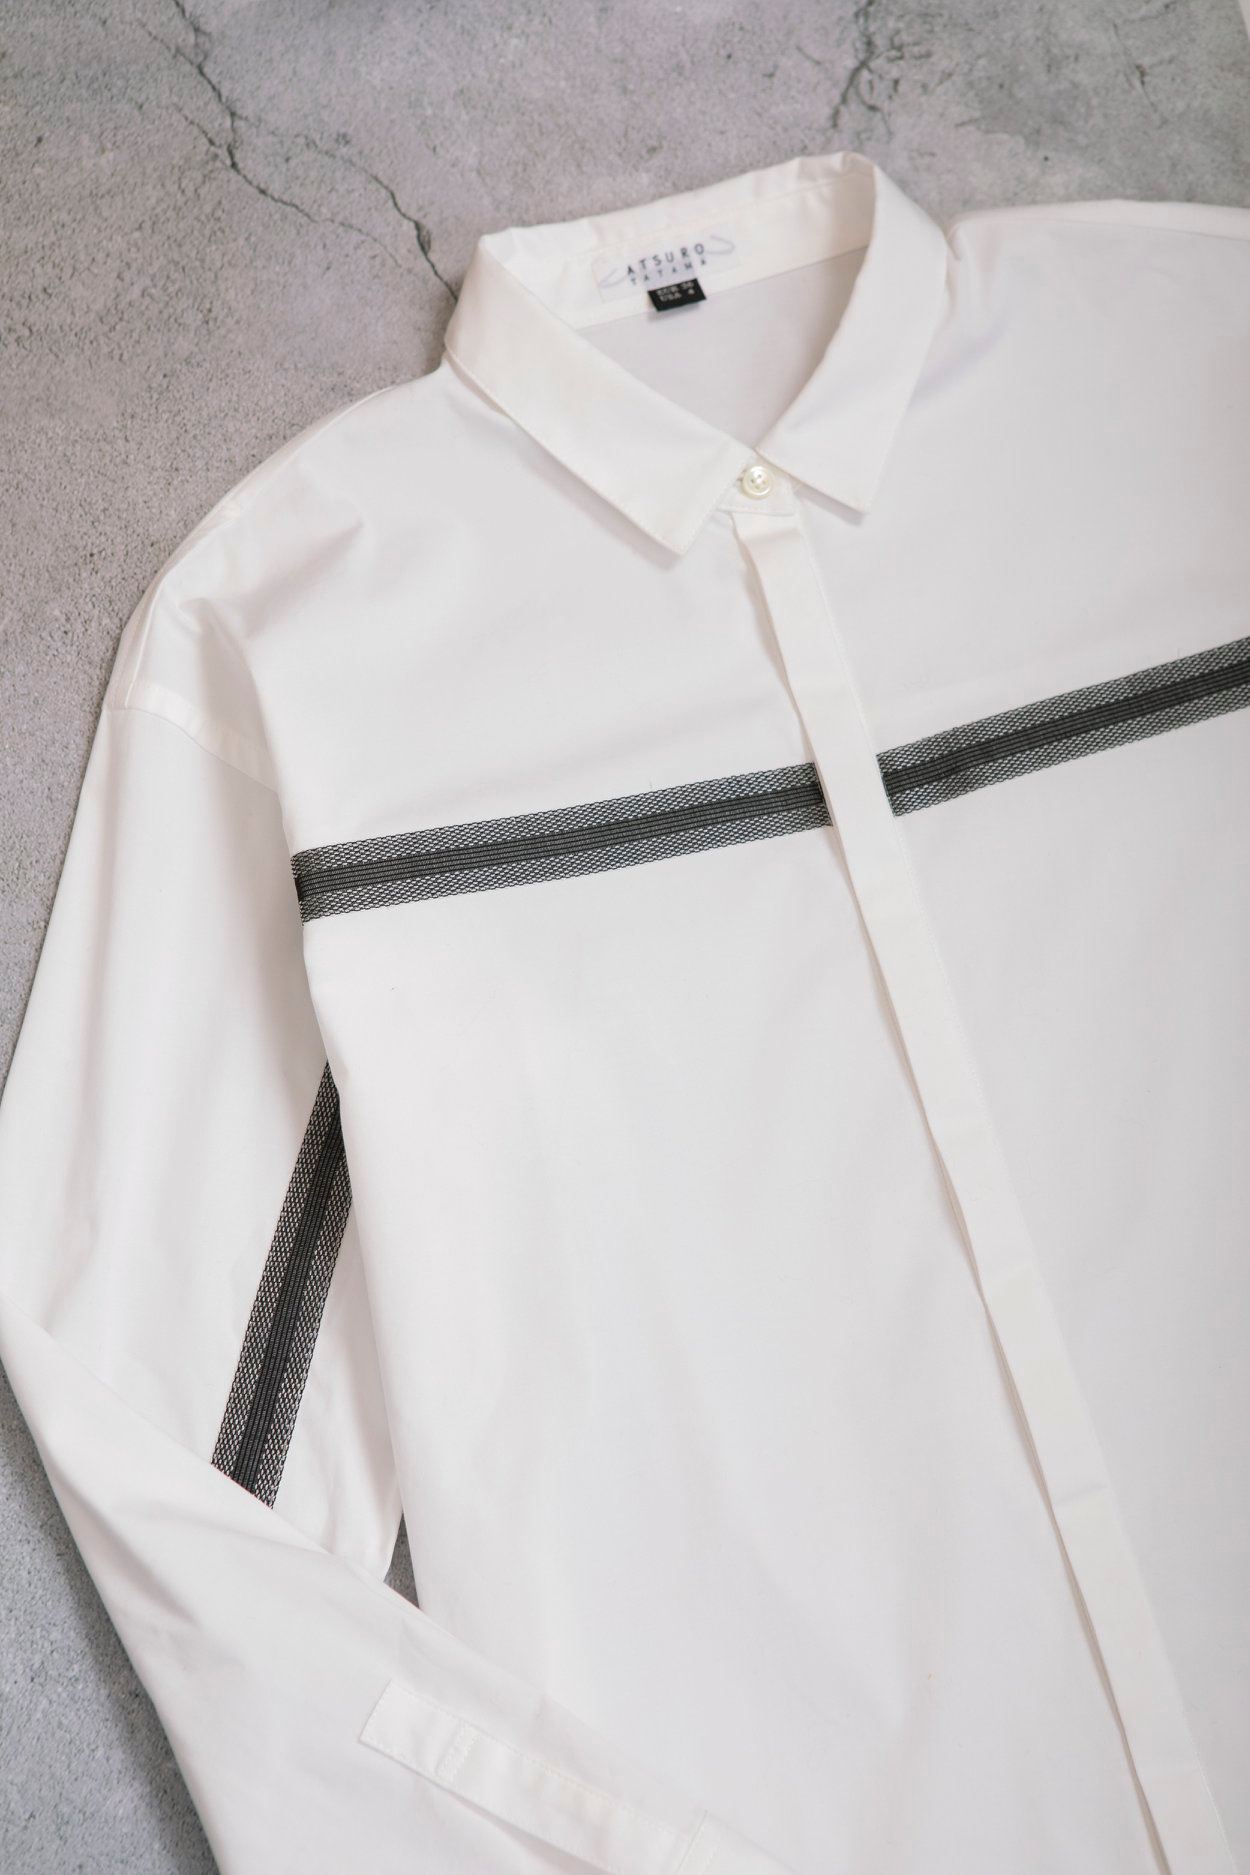 【Sporty Chic Tape Shirt】Atsuro Tayama擅於結合前衛元素與運動風格，於特大剪裁的中性襯衫織出仿如運動者常備的運動織帶，豐富了單品的層次感，並為造型增添個性魅力。 更多Atsuro Tayama單品在Sidefame網店發售﹕